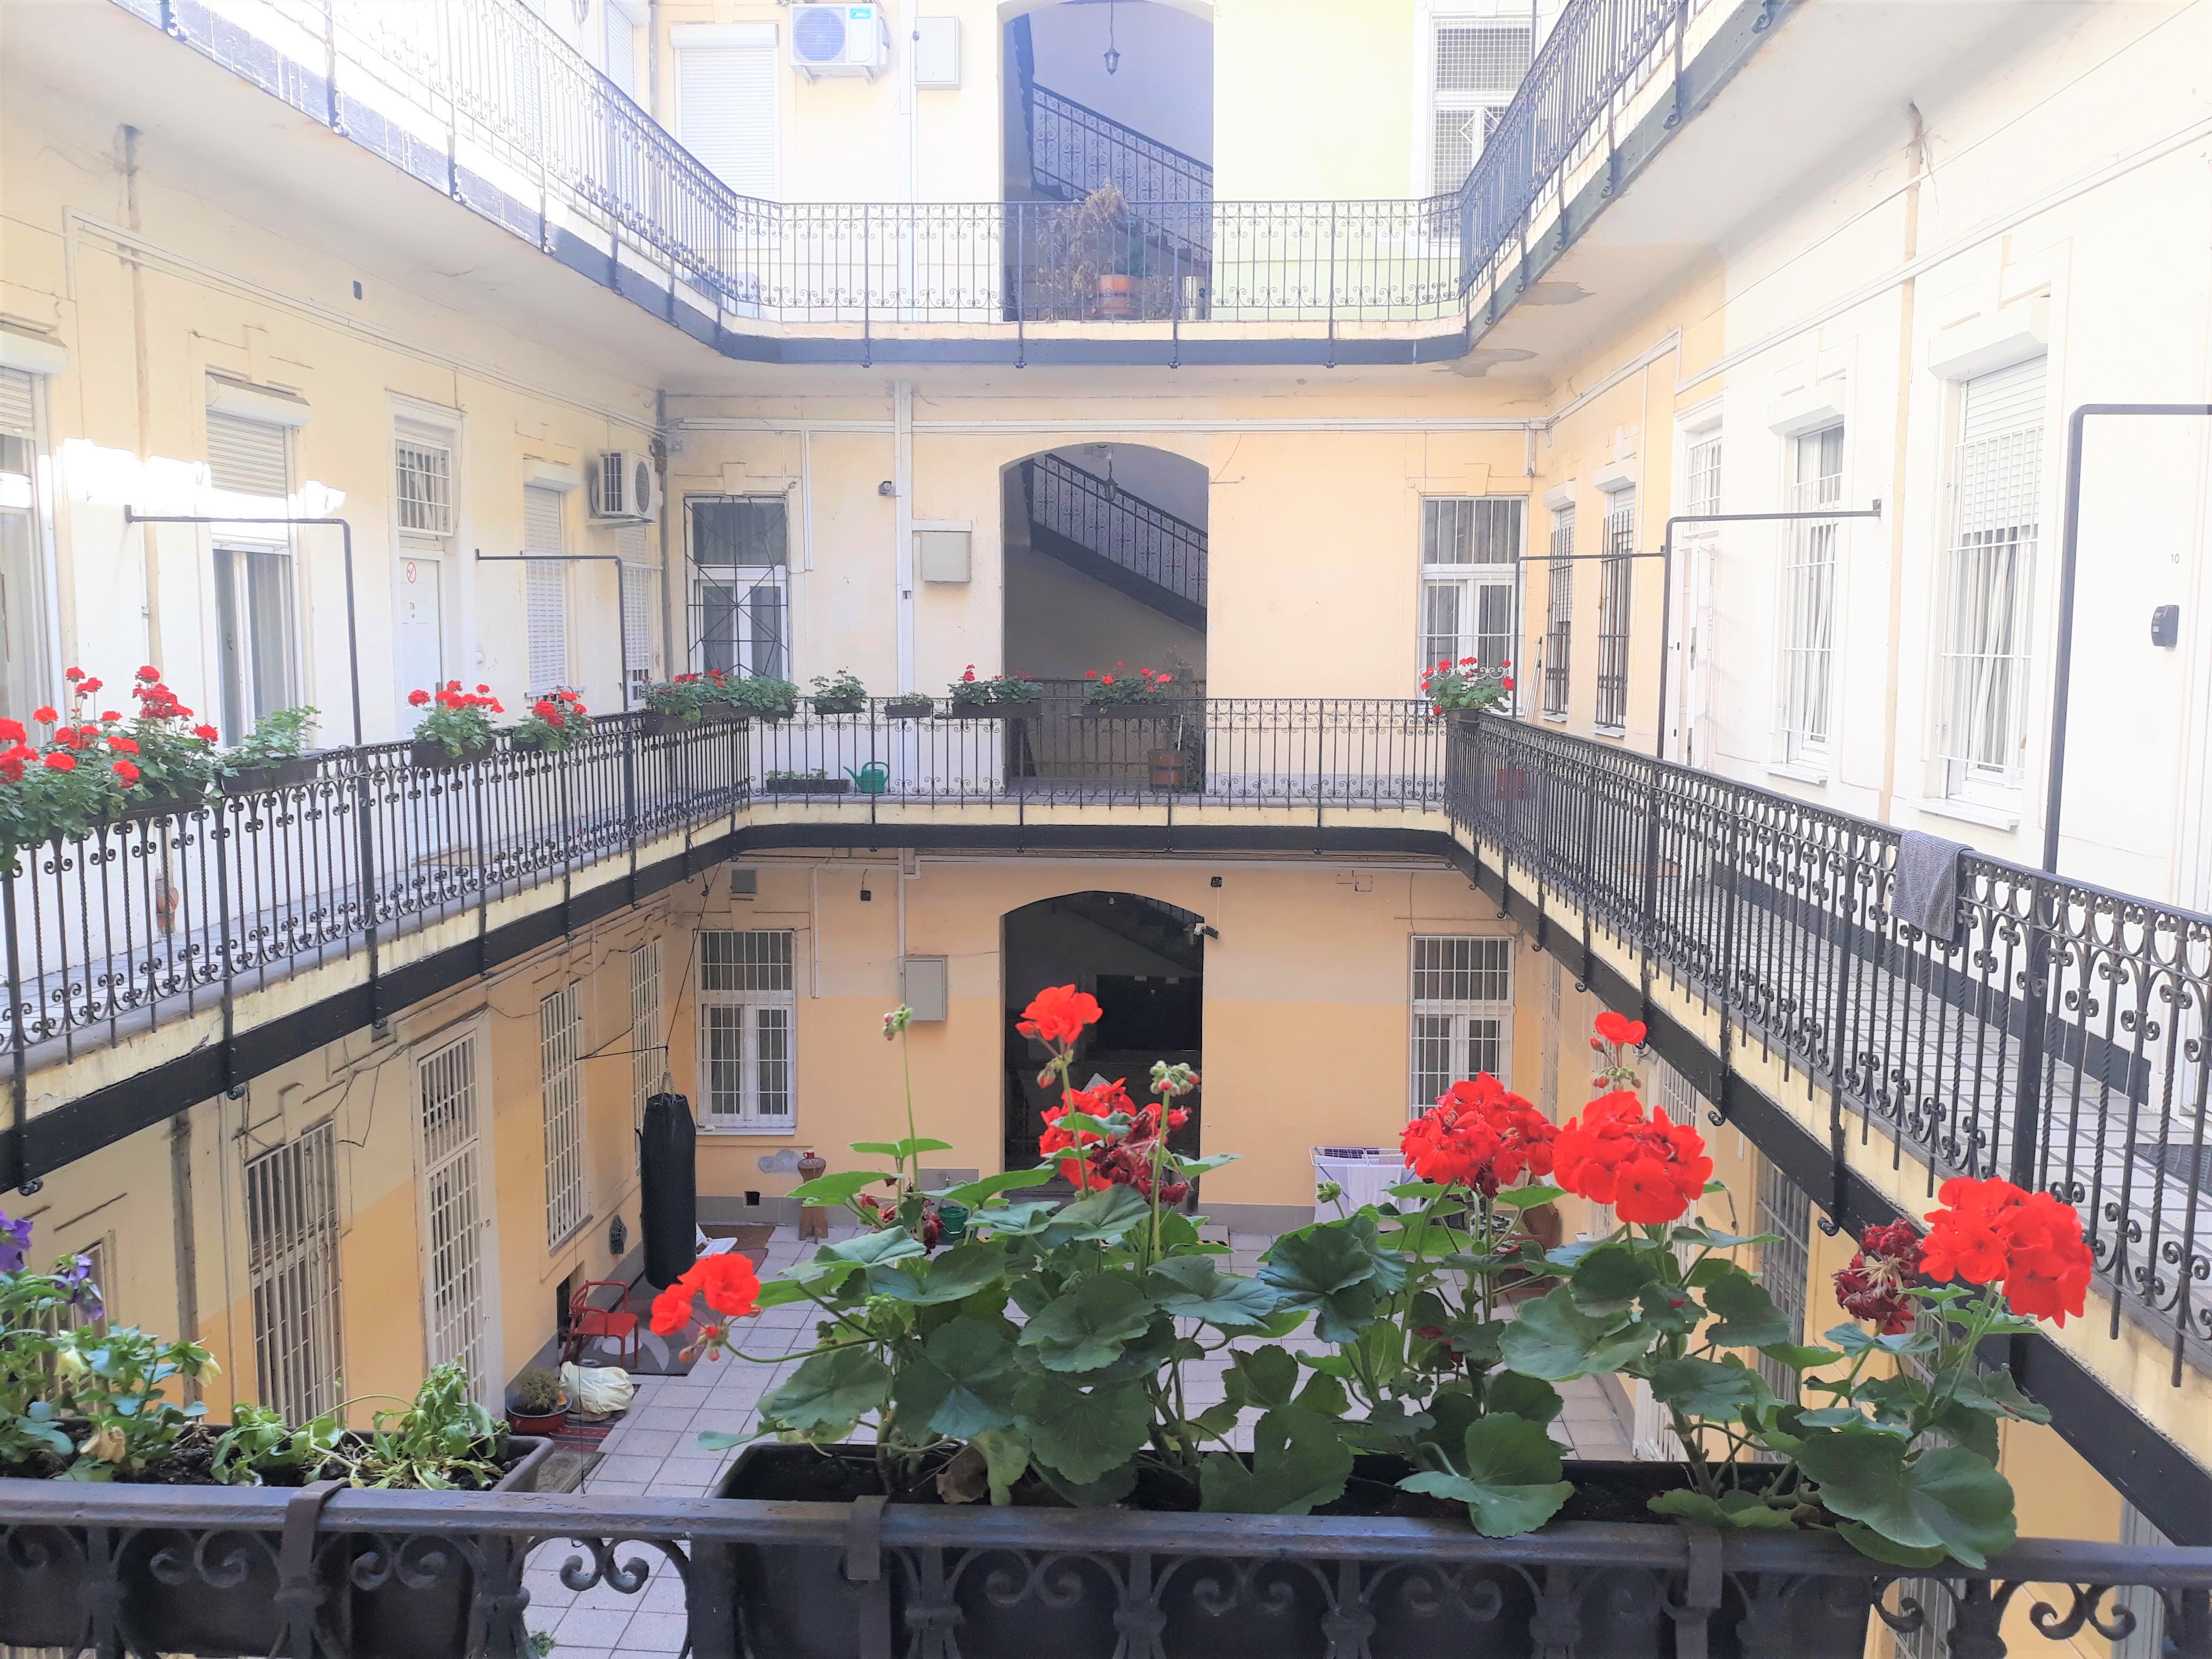 trzypokojowe mieszkania do wynajecia w Budapeszcie na długi okres